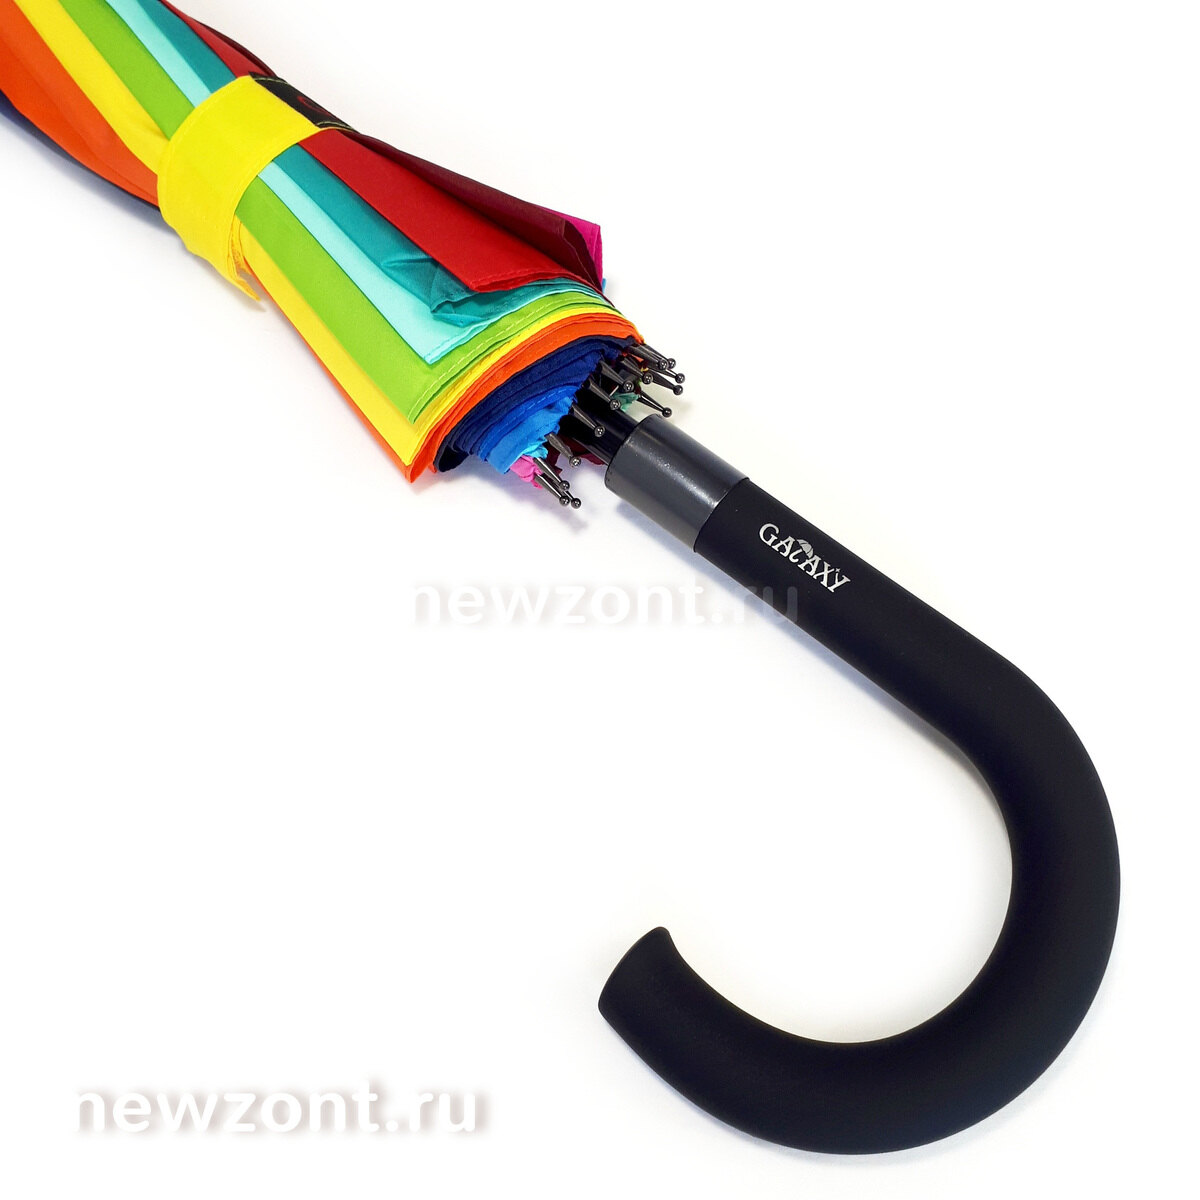 J - образная ручка крюк зонта радуги